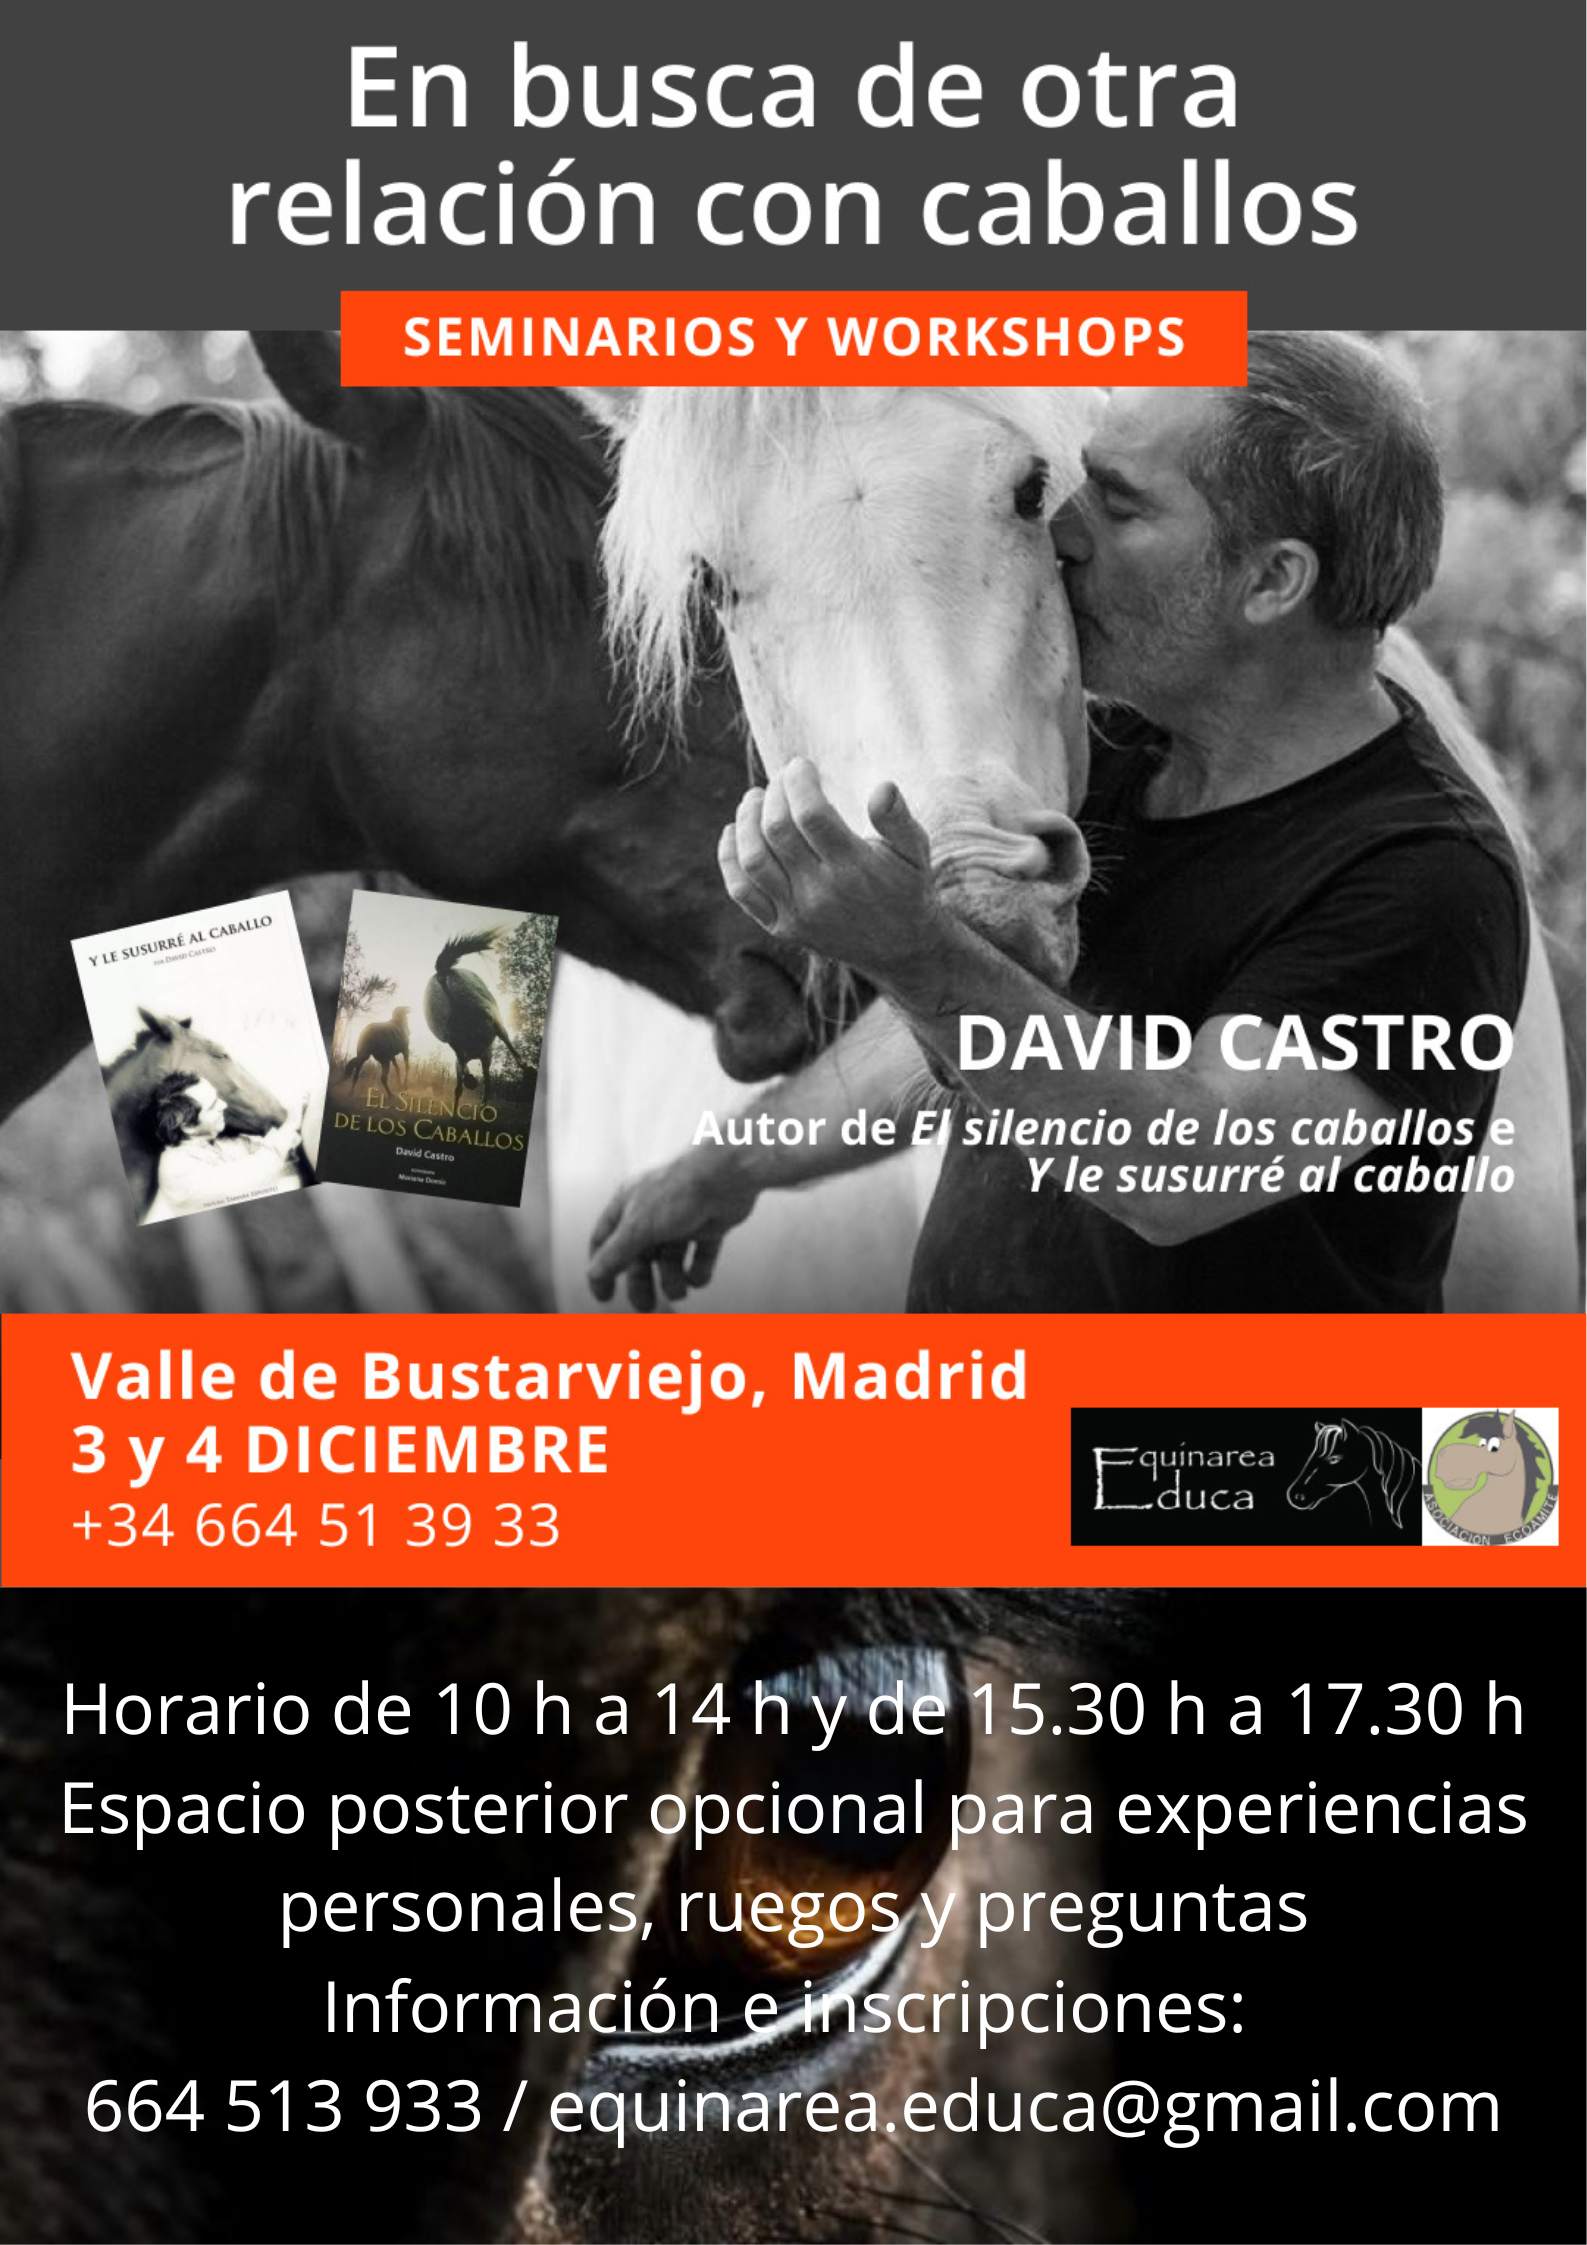 David Castro, Valle de Bustarviejo, Madrid, España 3 y 4 de Diciembre 2022, Talleres, cursos y seminarios sobre Caballos